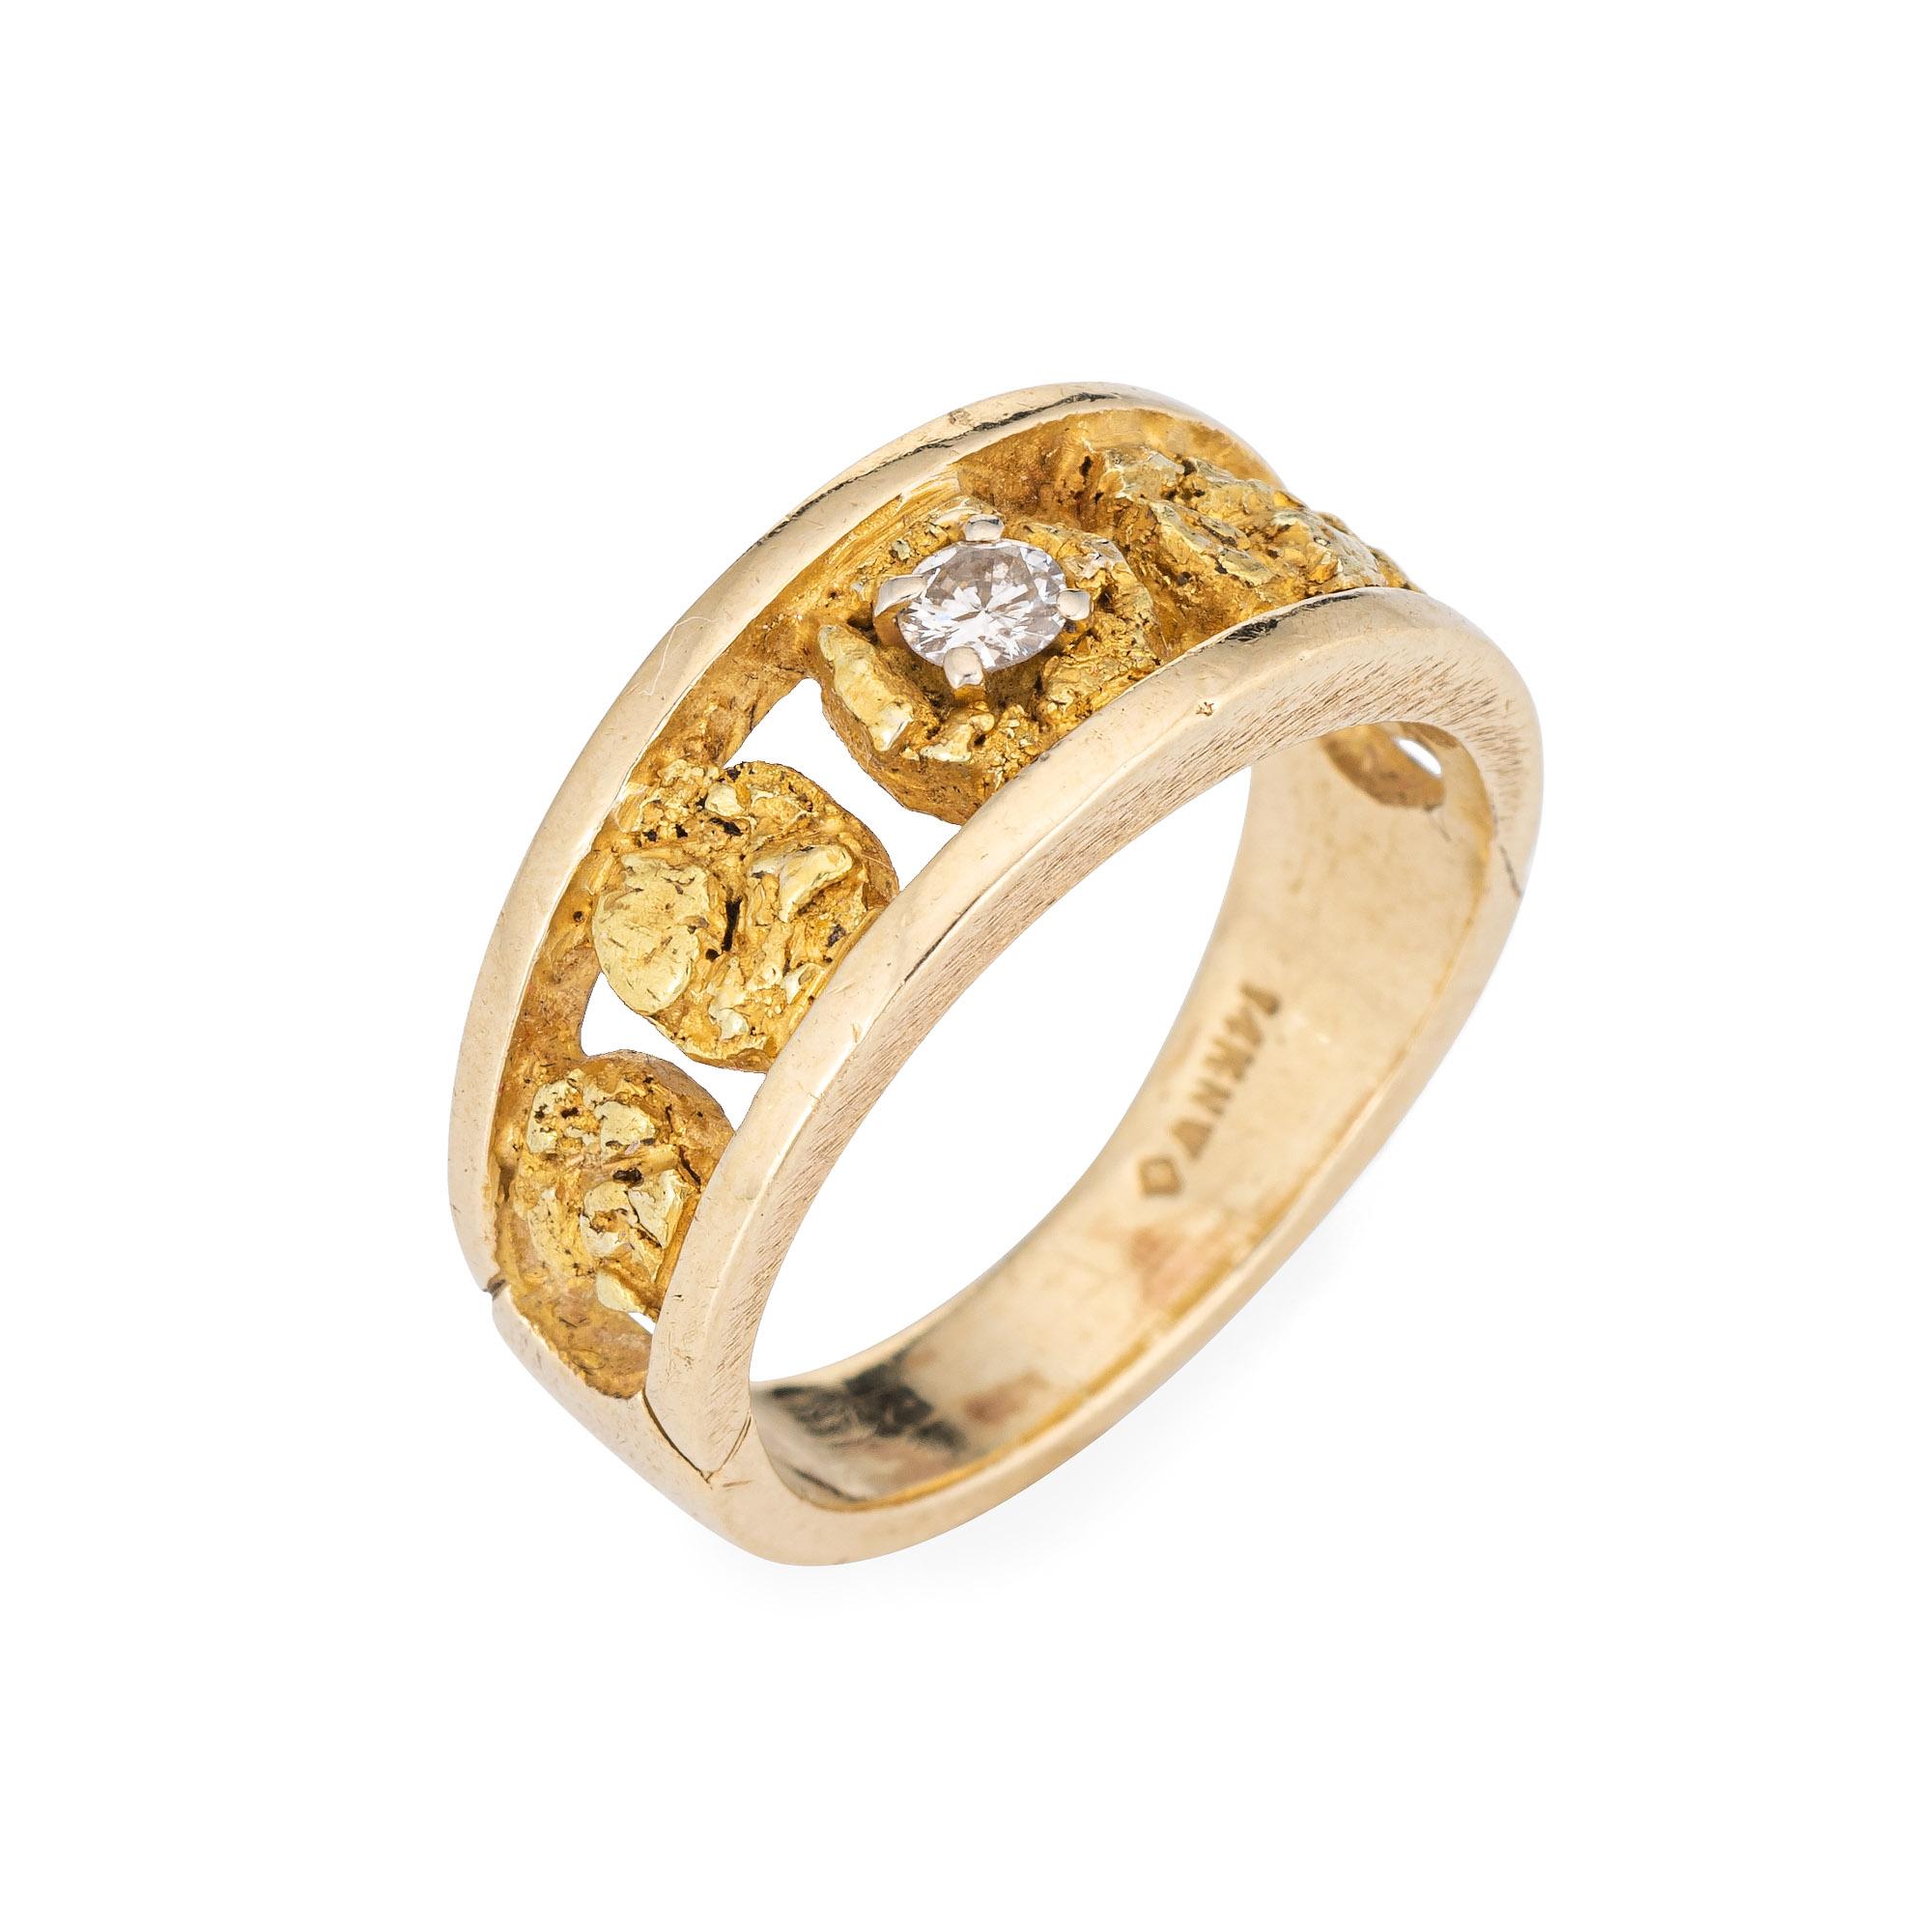 Élégante bague vintage en or jaune 14 carats (les pépites d'or sont en or 24 carats), ornée de pépites et de diamants (circa 1970). 

Un diamant rond de taille brillant estimé à 0,10 carat est serti dans la pépite centrale (couleur estimée J-K et